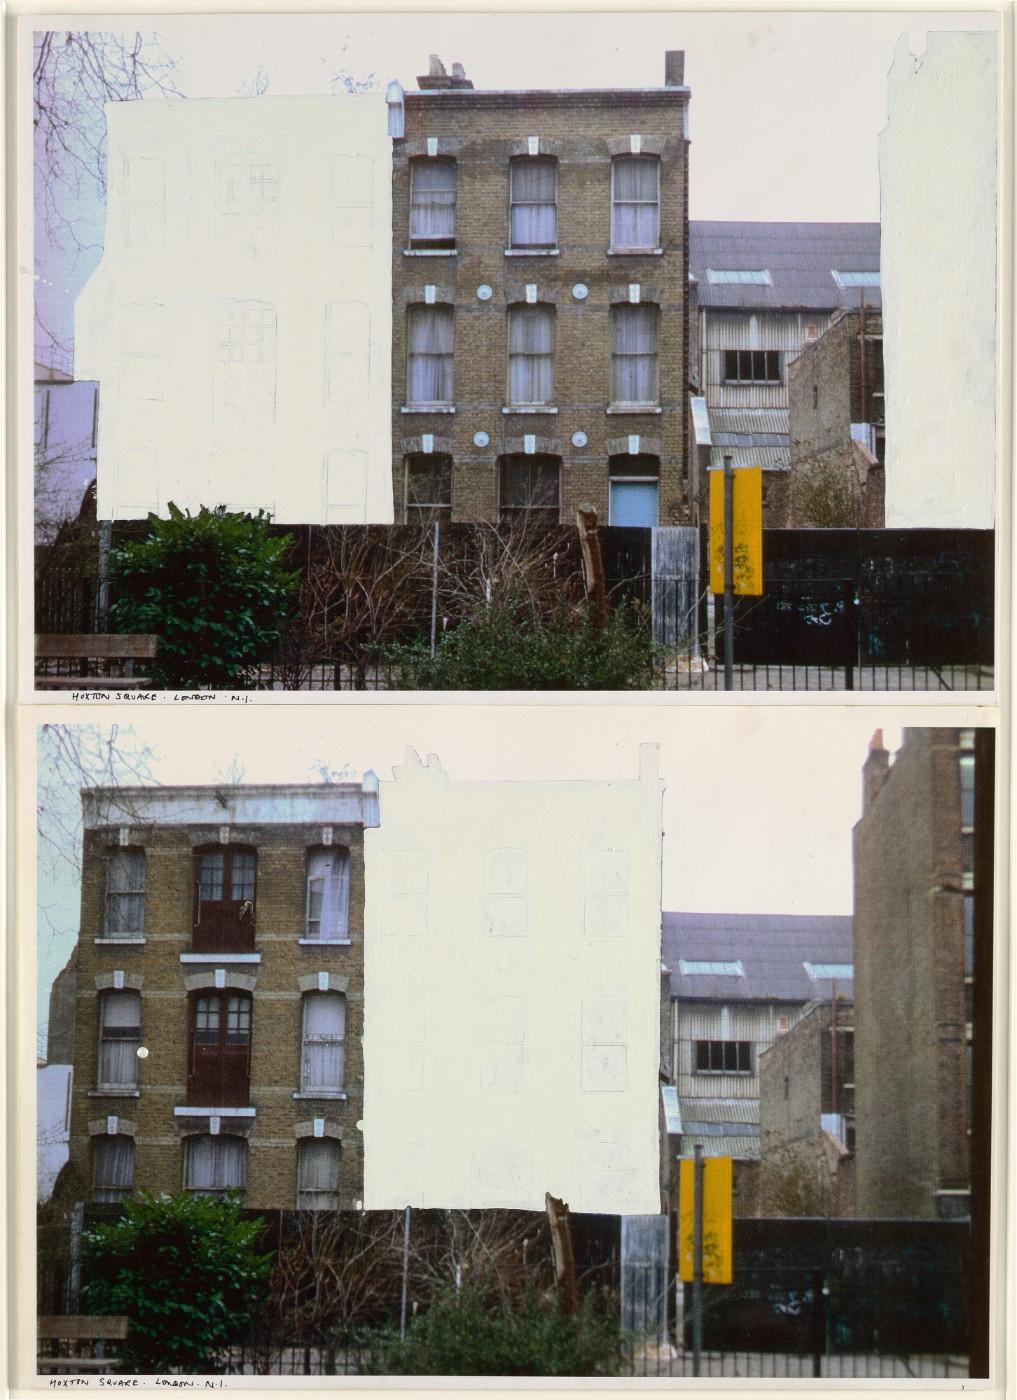 Rachel Whiteread, Study for "House", 1992